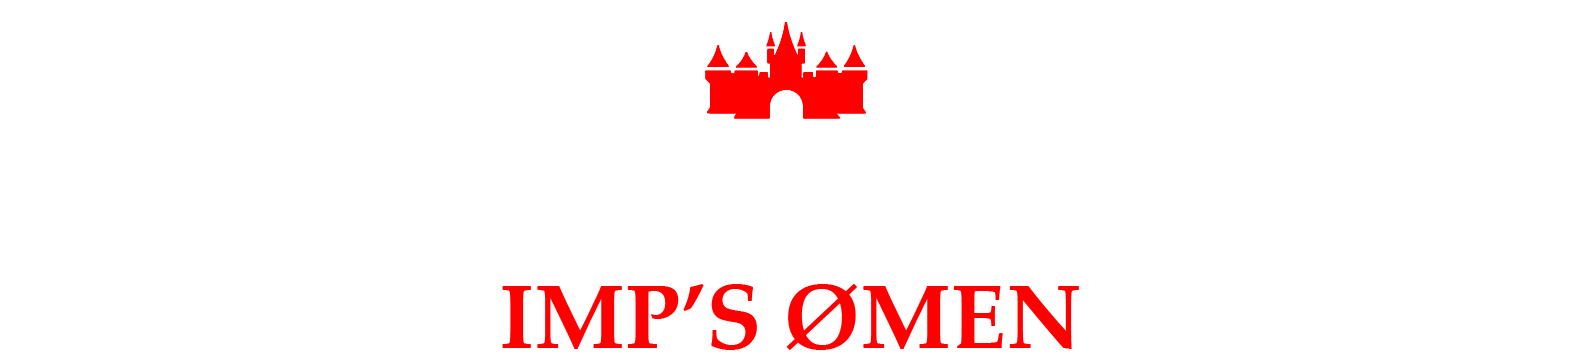 IV Castle Rumble: Imps Omen